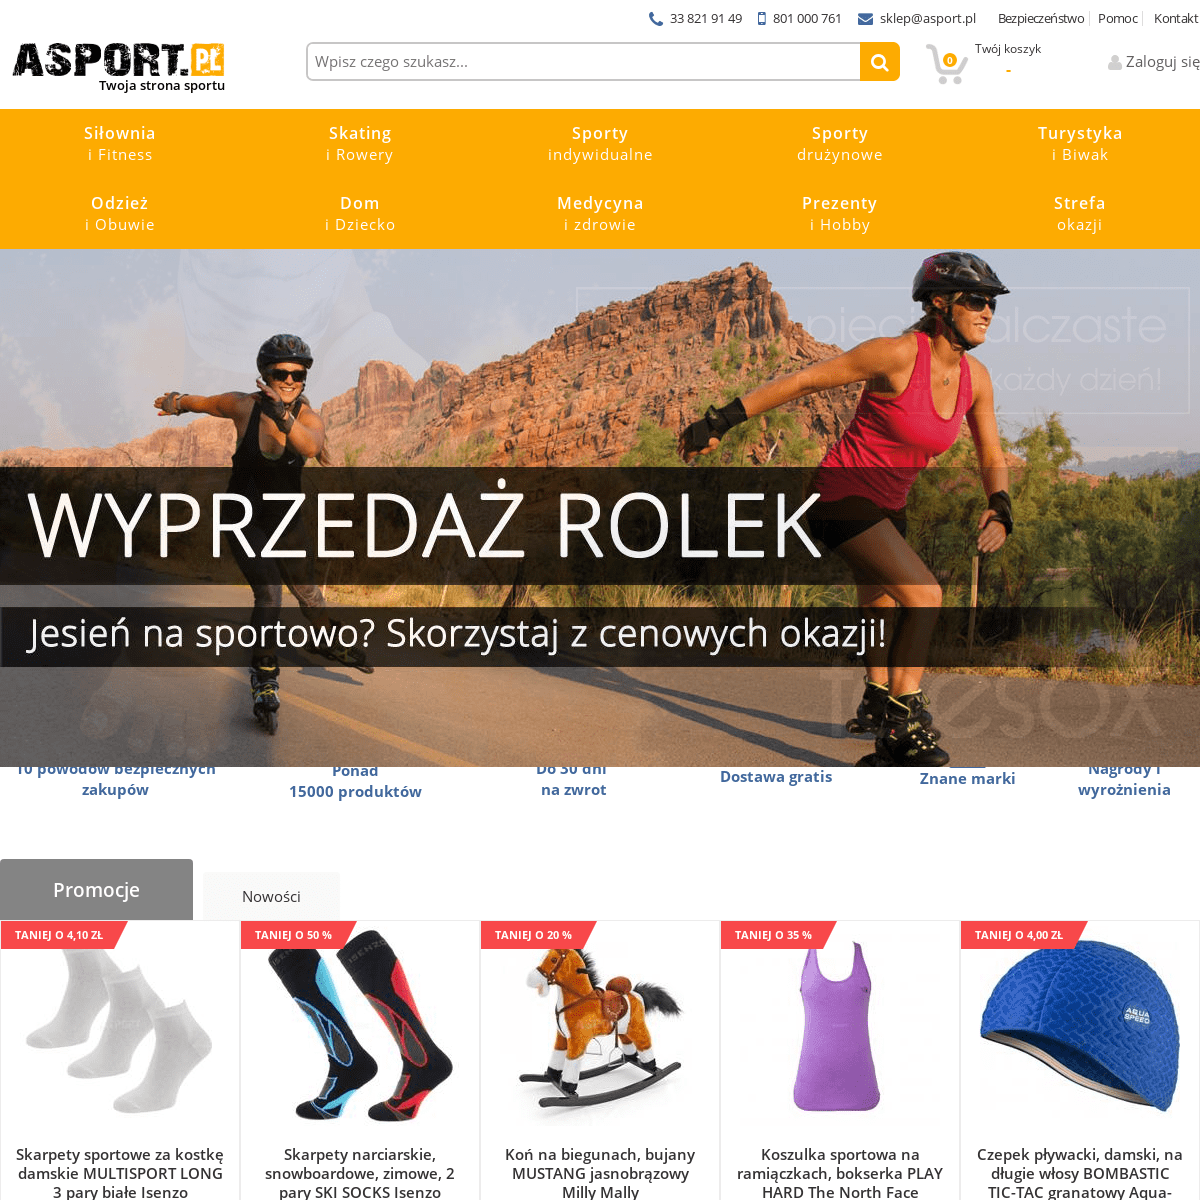 A complete backup of asport.com.pl